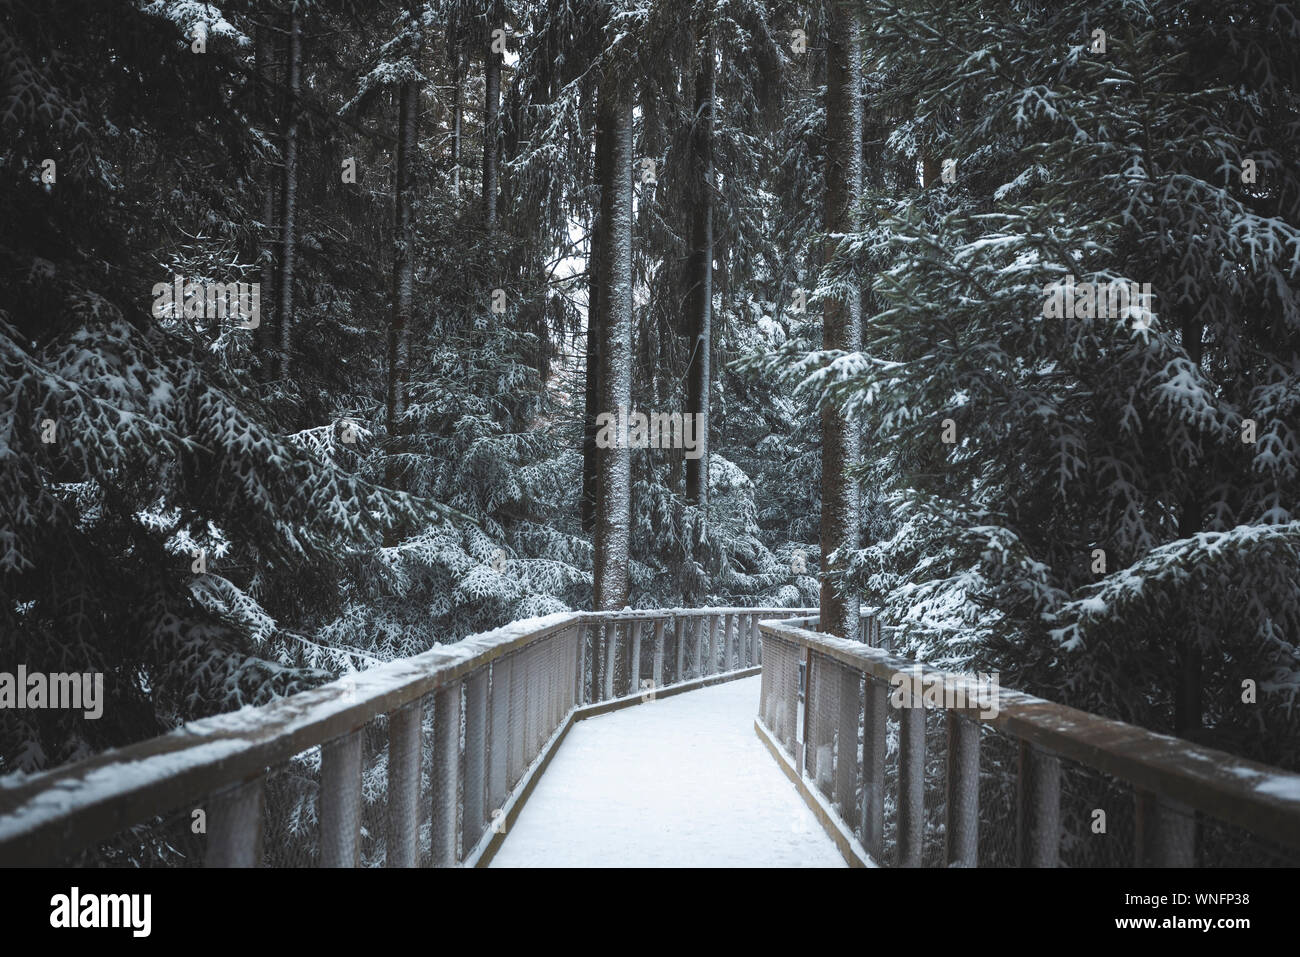 Un pont suspendu au-dessus de la forêt enneigée, parmi les arbres couverts de neige, à Bad Wildbad, Allemagne. Plus de mariée la plus réputée de arbres, en hiver. Banque D'Images